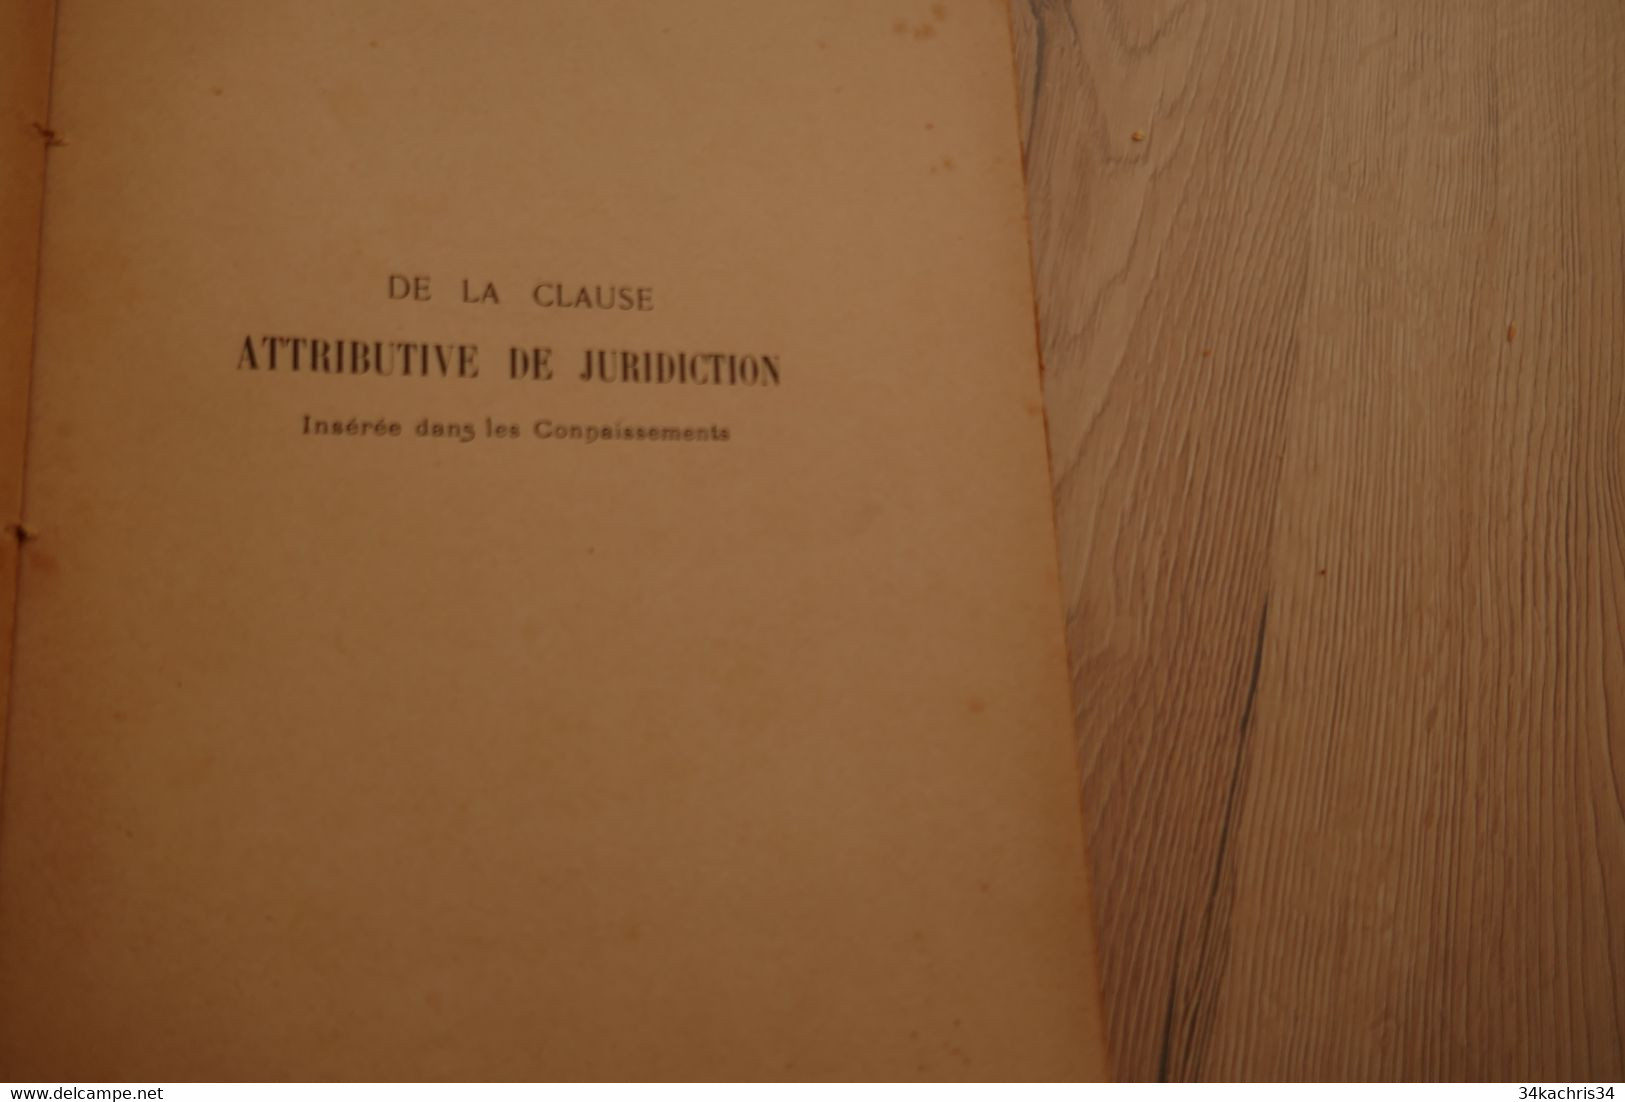 Thèse Pour Le Doctorat De La Clause Attributive De Juridiction Insérée Dans Les Connaissements 1905 P.Gautier Marine Com - Schiffe